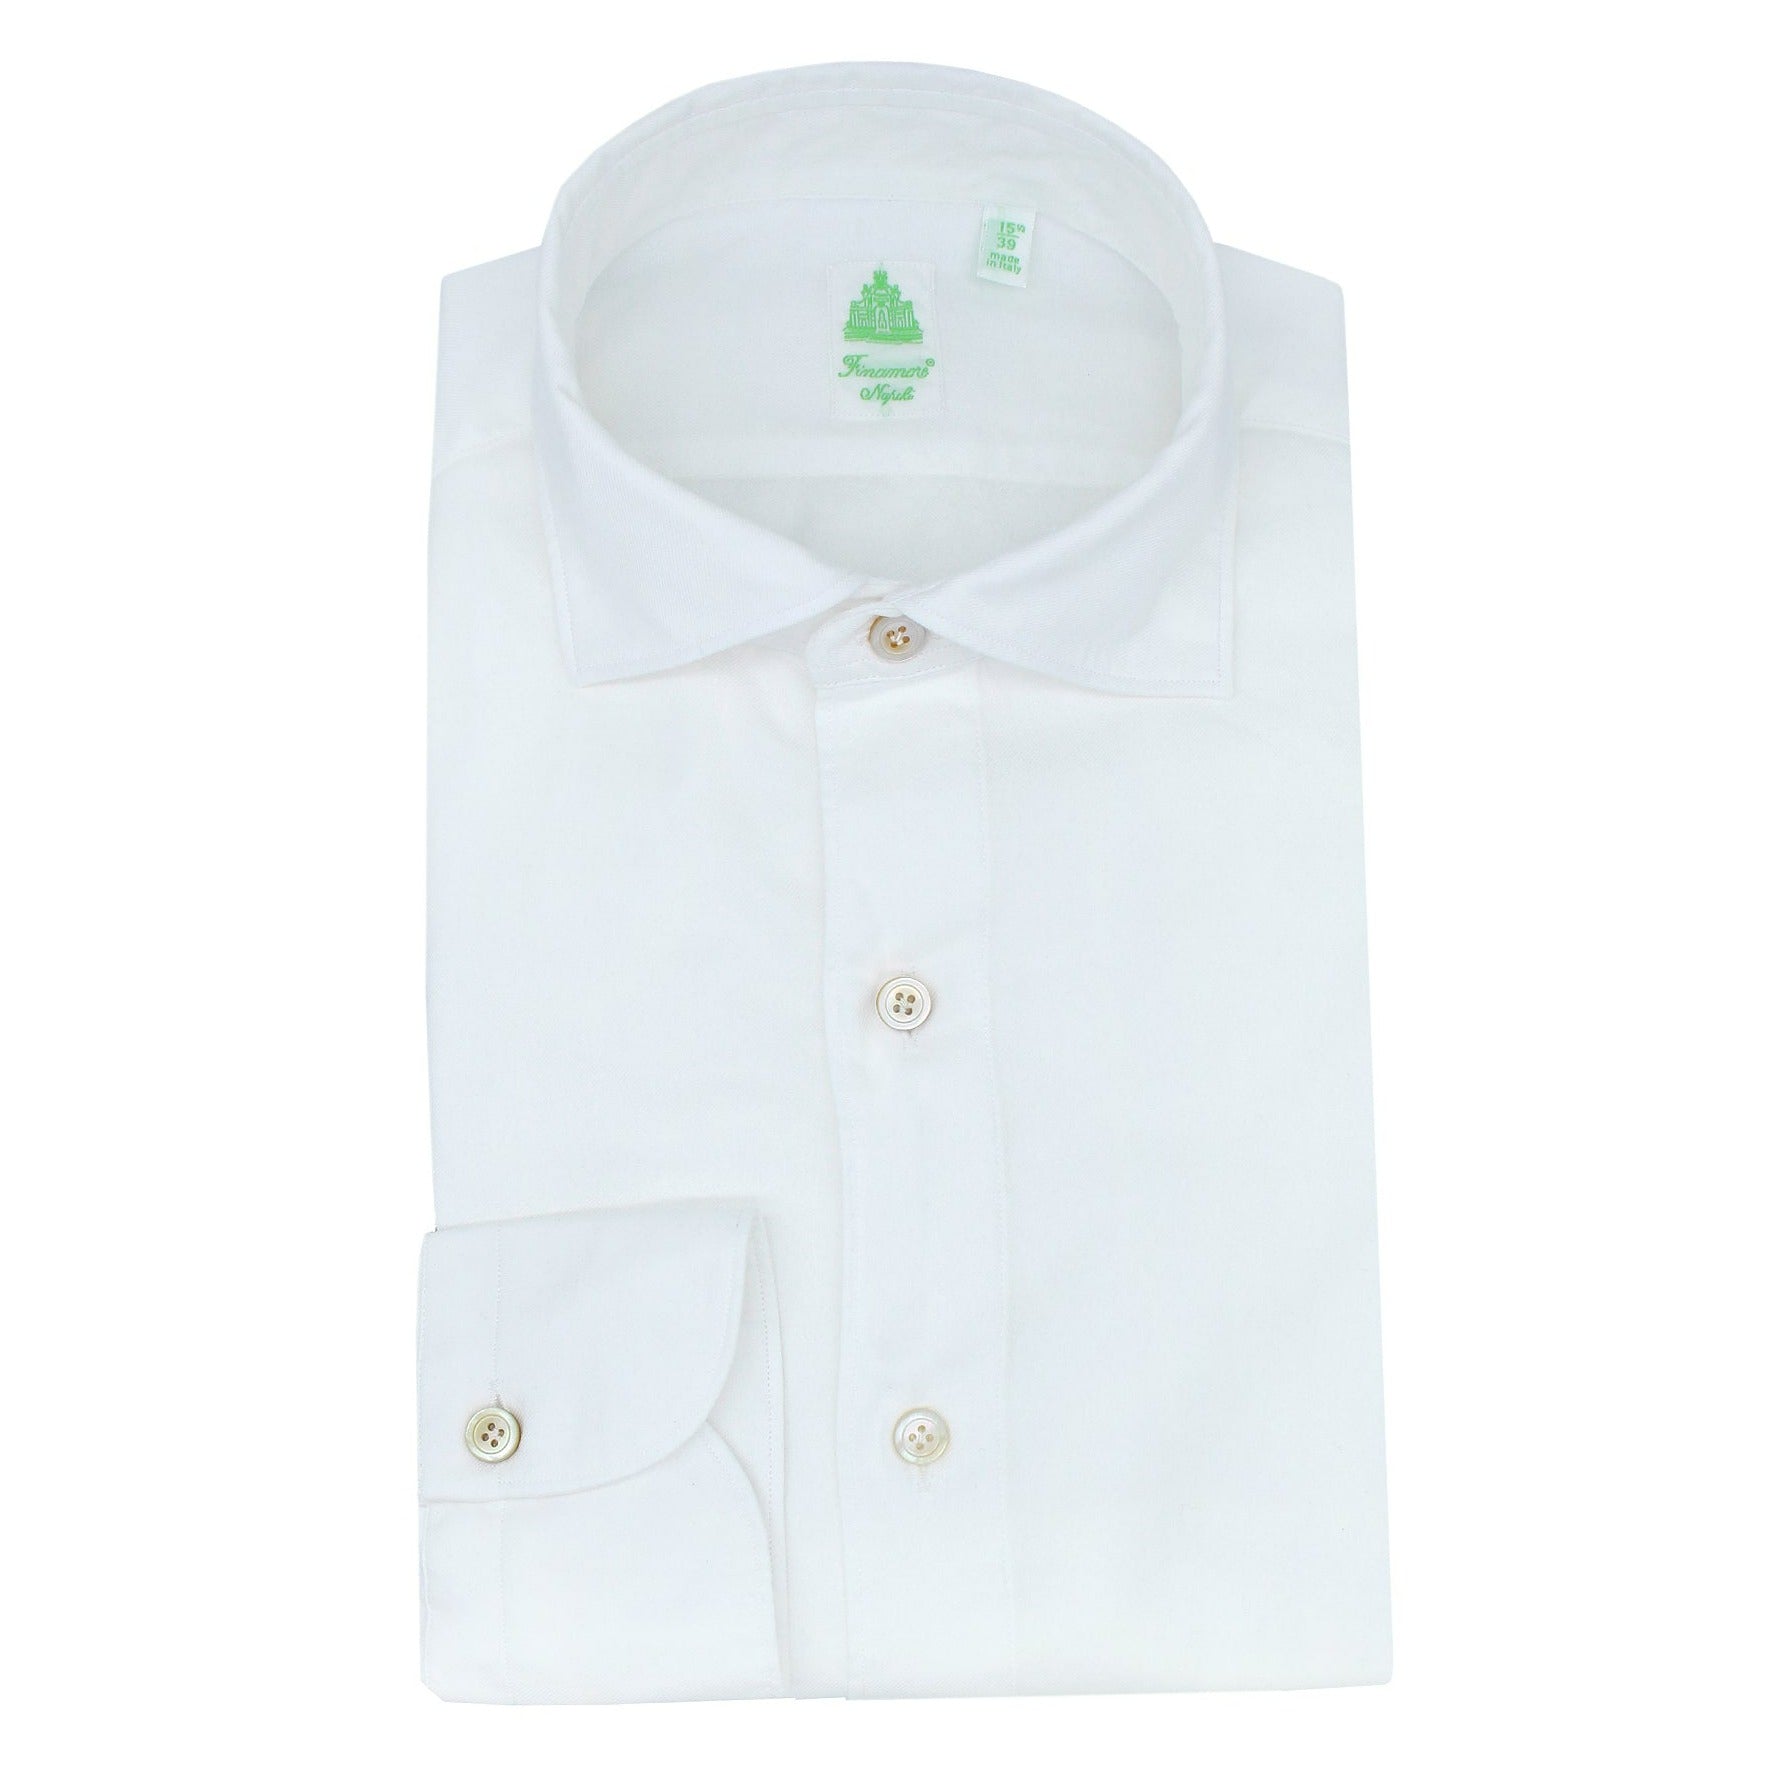 Tokyo sport shirt in white twill cotton